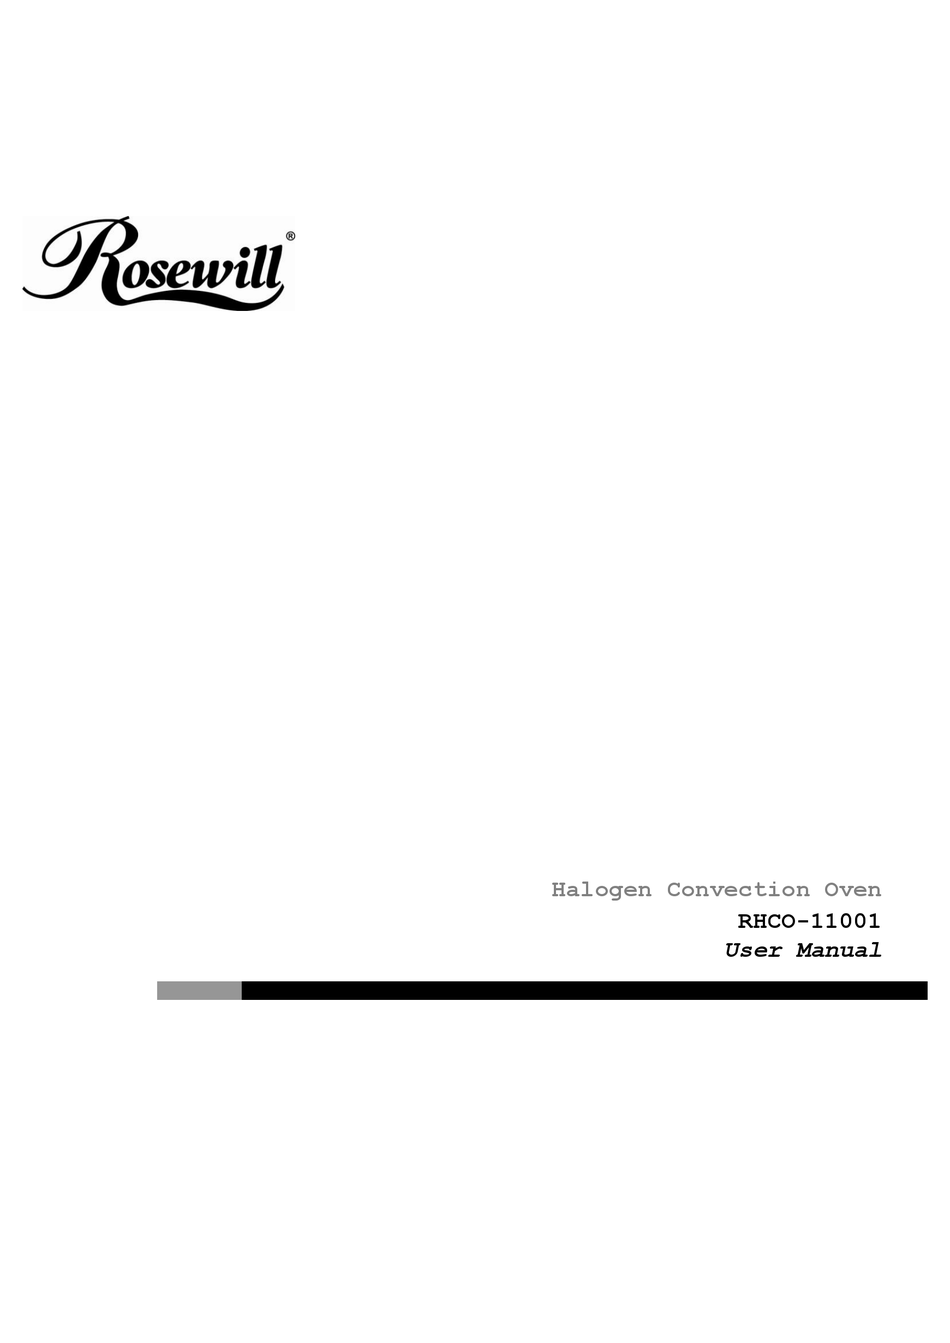 ROSEWILL RHCO-11001 USER MANUAL Pdf Download | ManualsLib